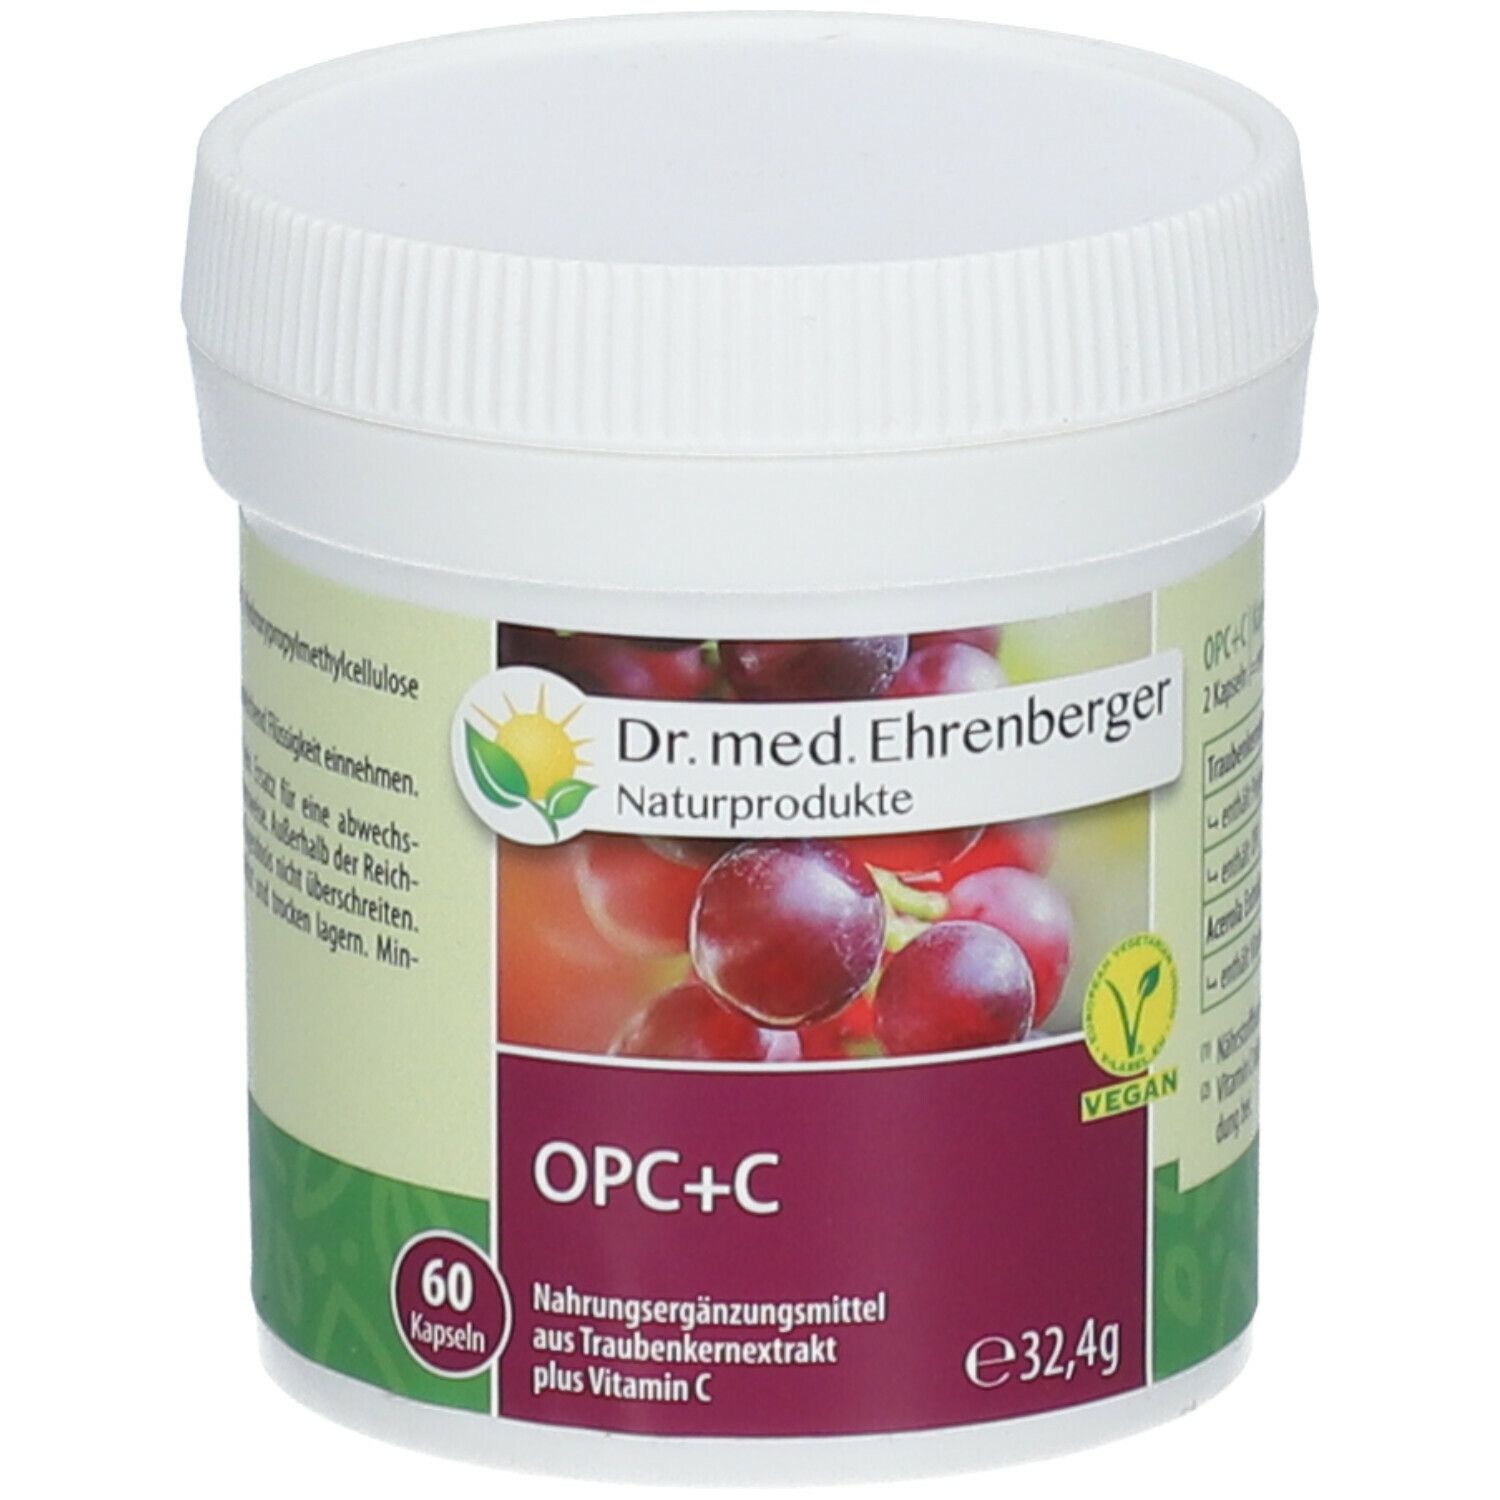 Dr. med. Ehrenberger OPC+C